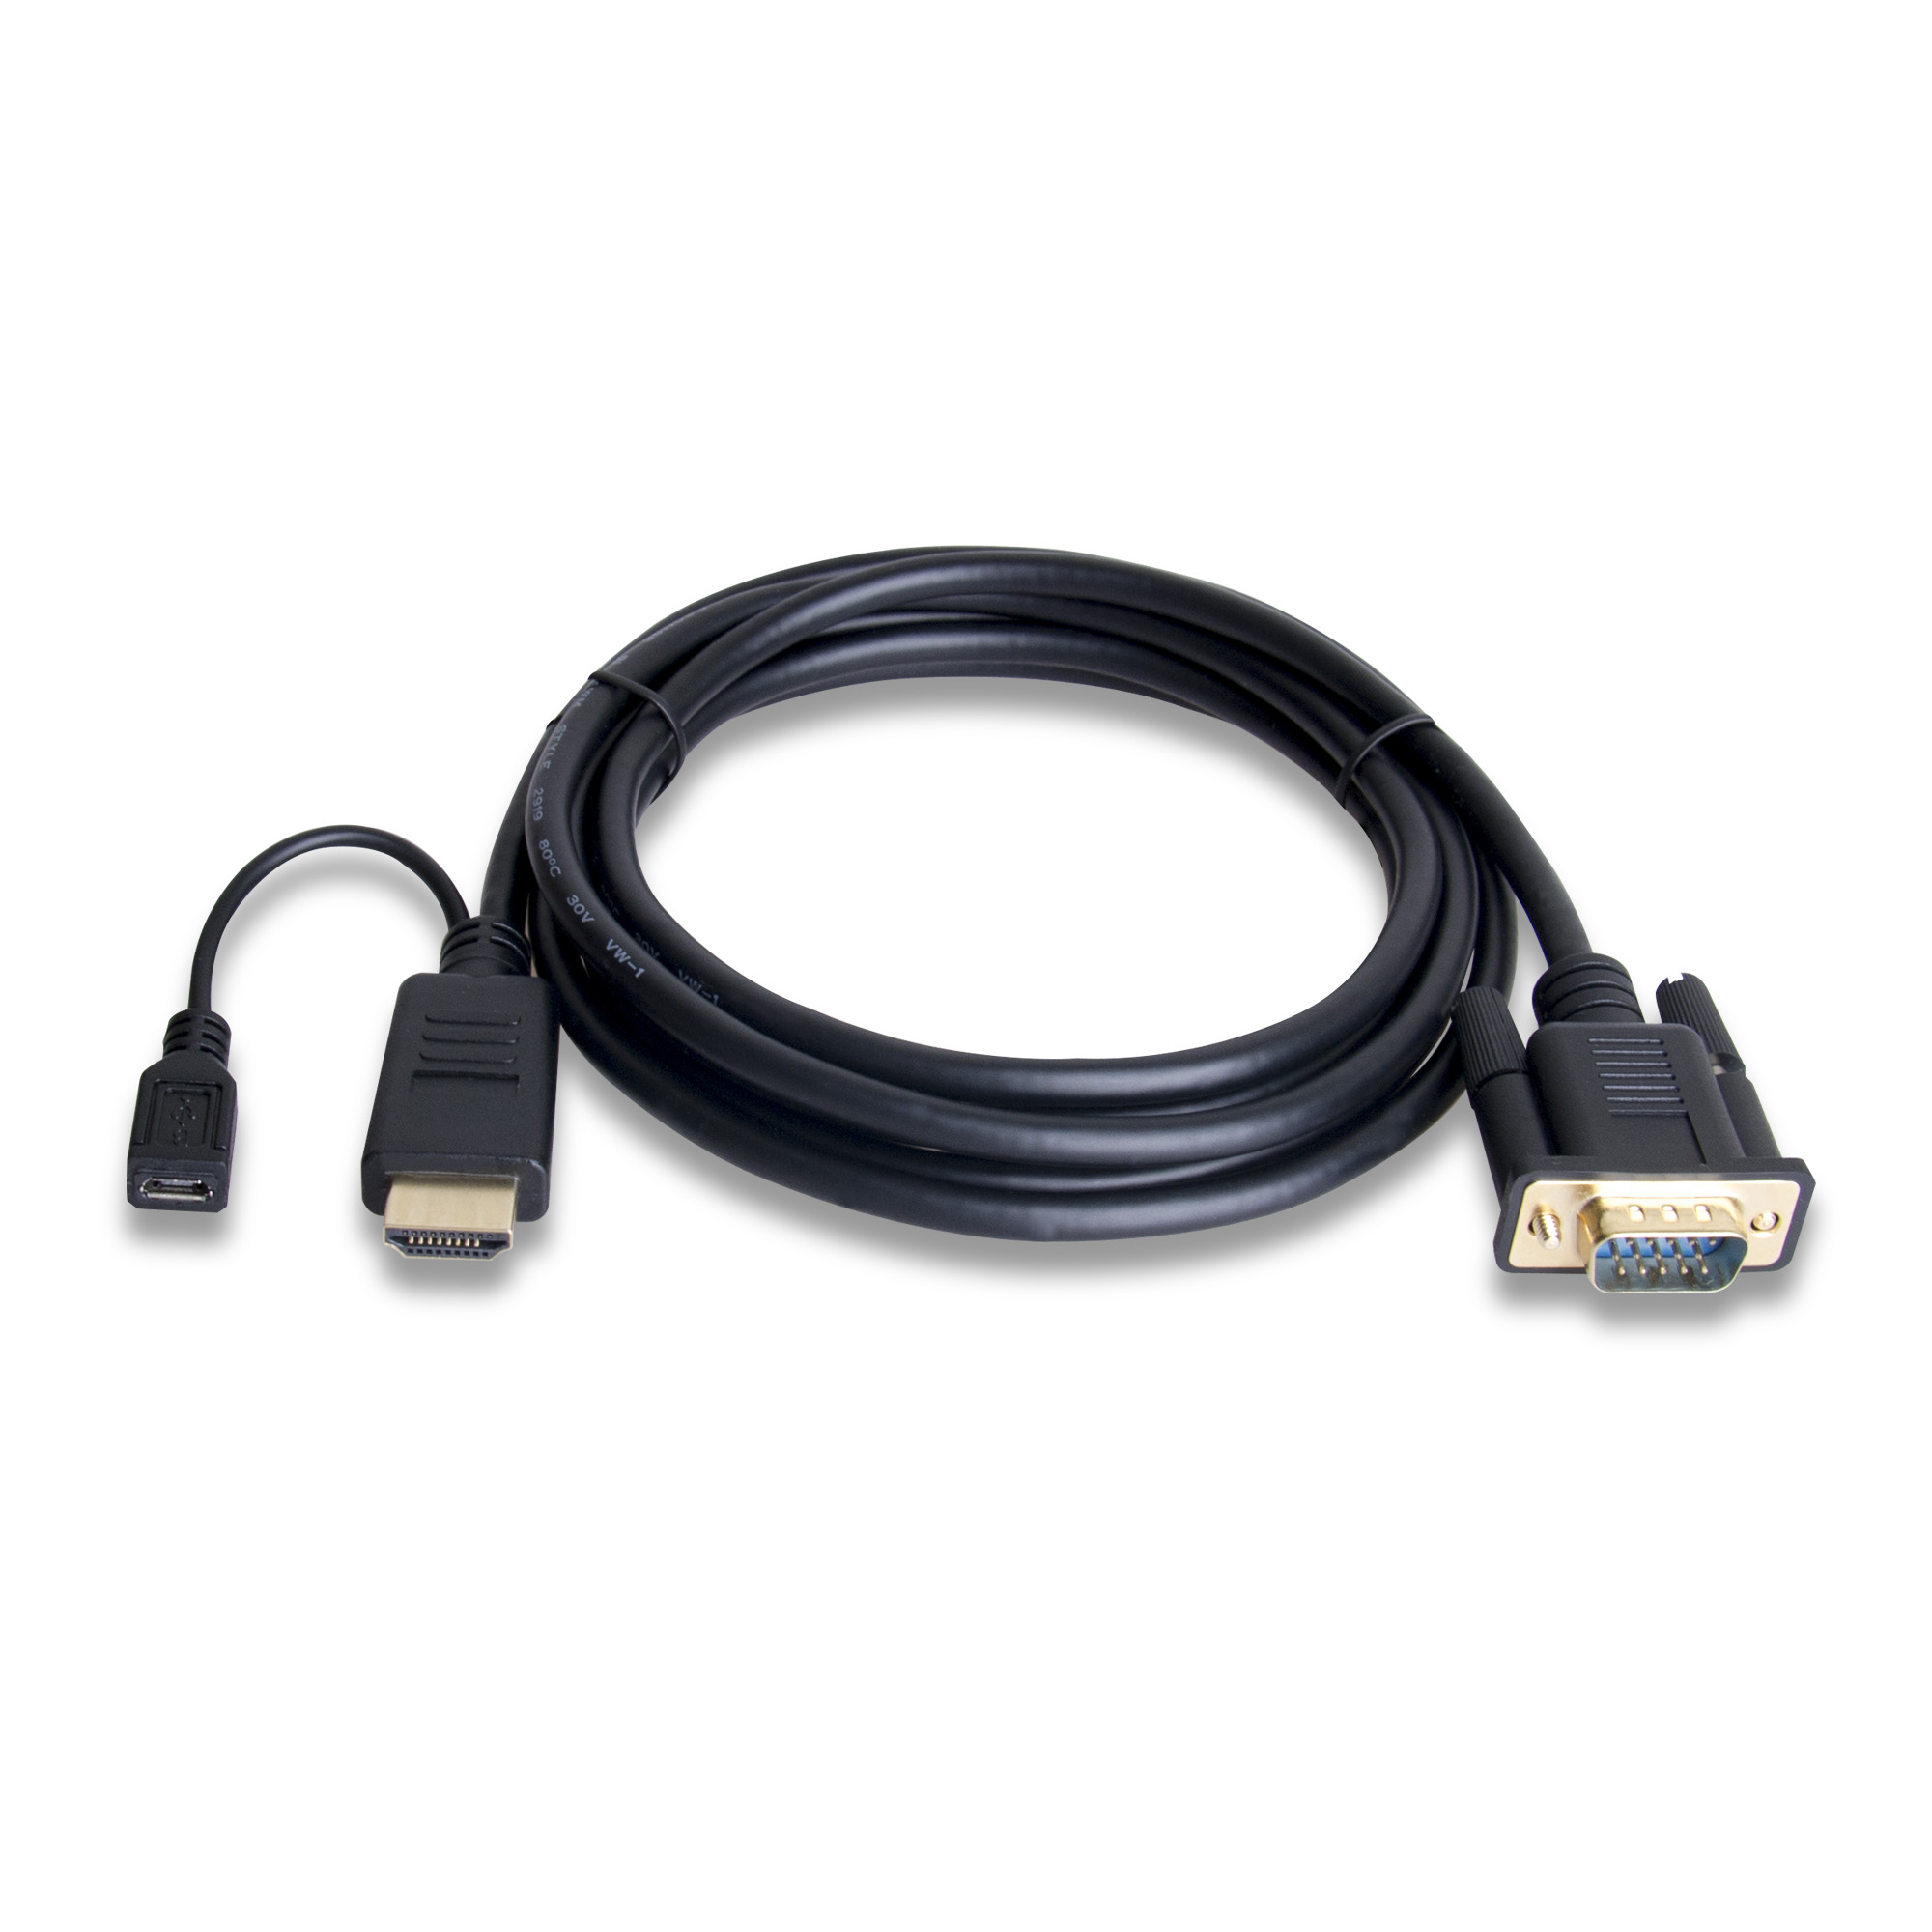 Verbeteren Reizende handelaar dans 6 ft. HDMI to VGA Adapter Cable w/ Audio | gofanco